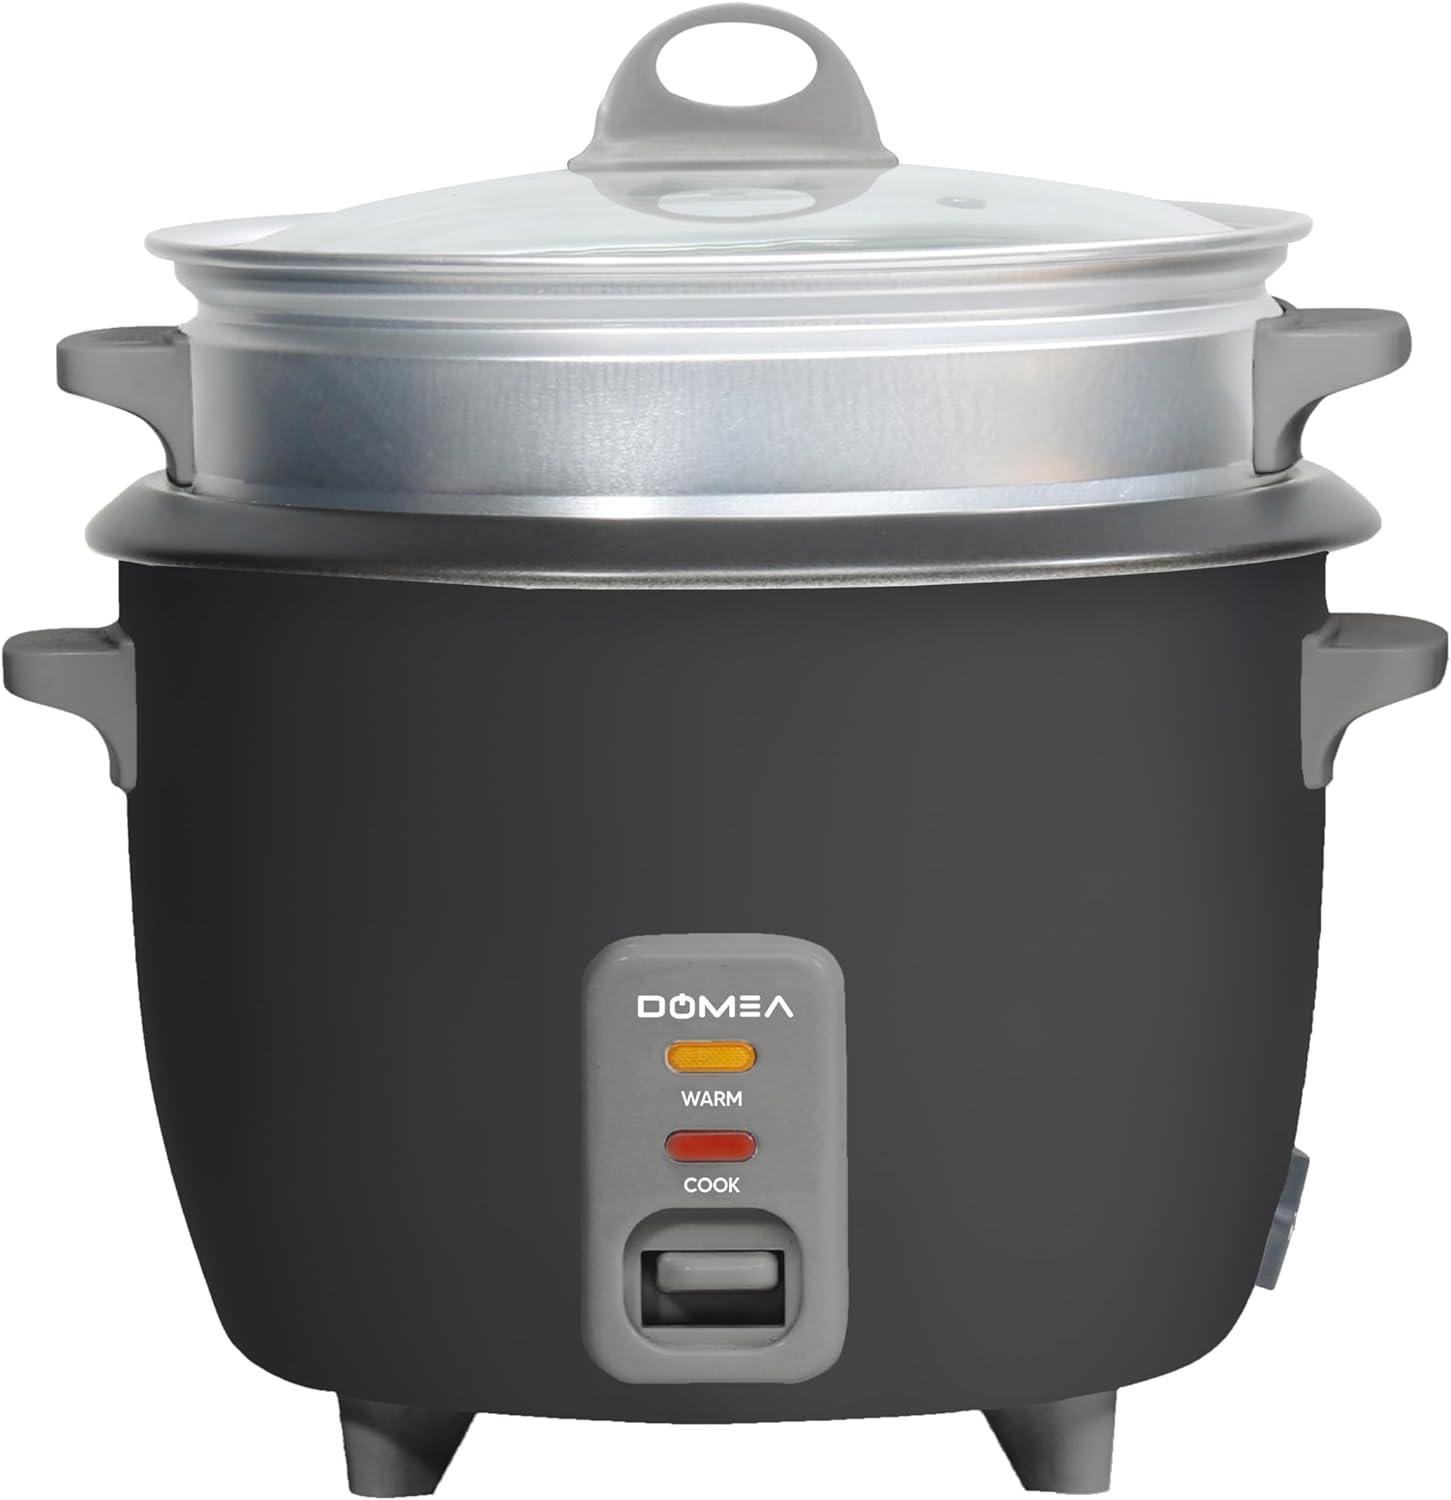 جهاز طبخ الأرز الكهربائي من دوميا بقدرة 400 واط، سعة 1 لتر، مع وعاء طهي غير لاصق قابل للإزالة وصينية تبخير مع غطاء زجاجي، وظائف إضاءة دافئة/طهي، أسود